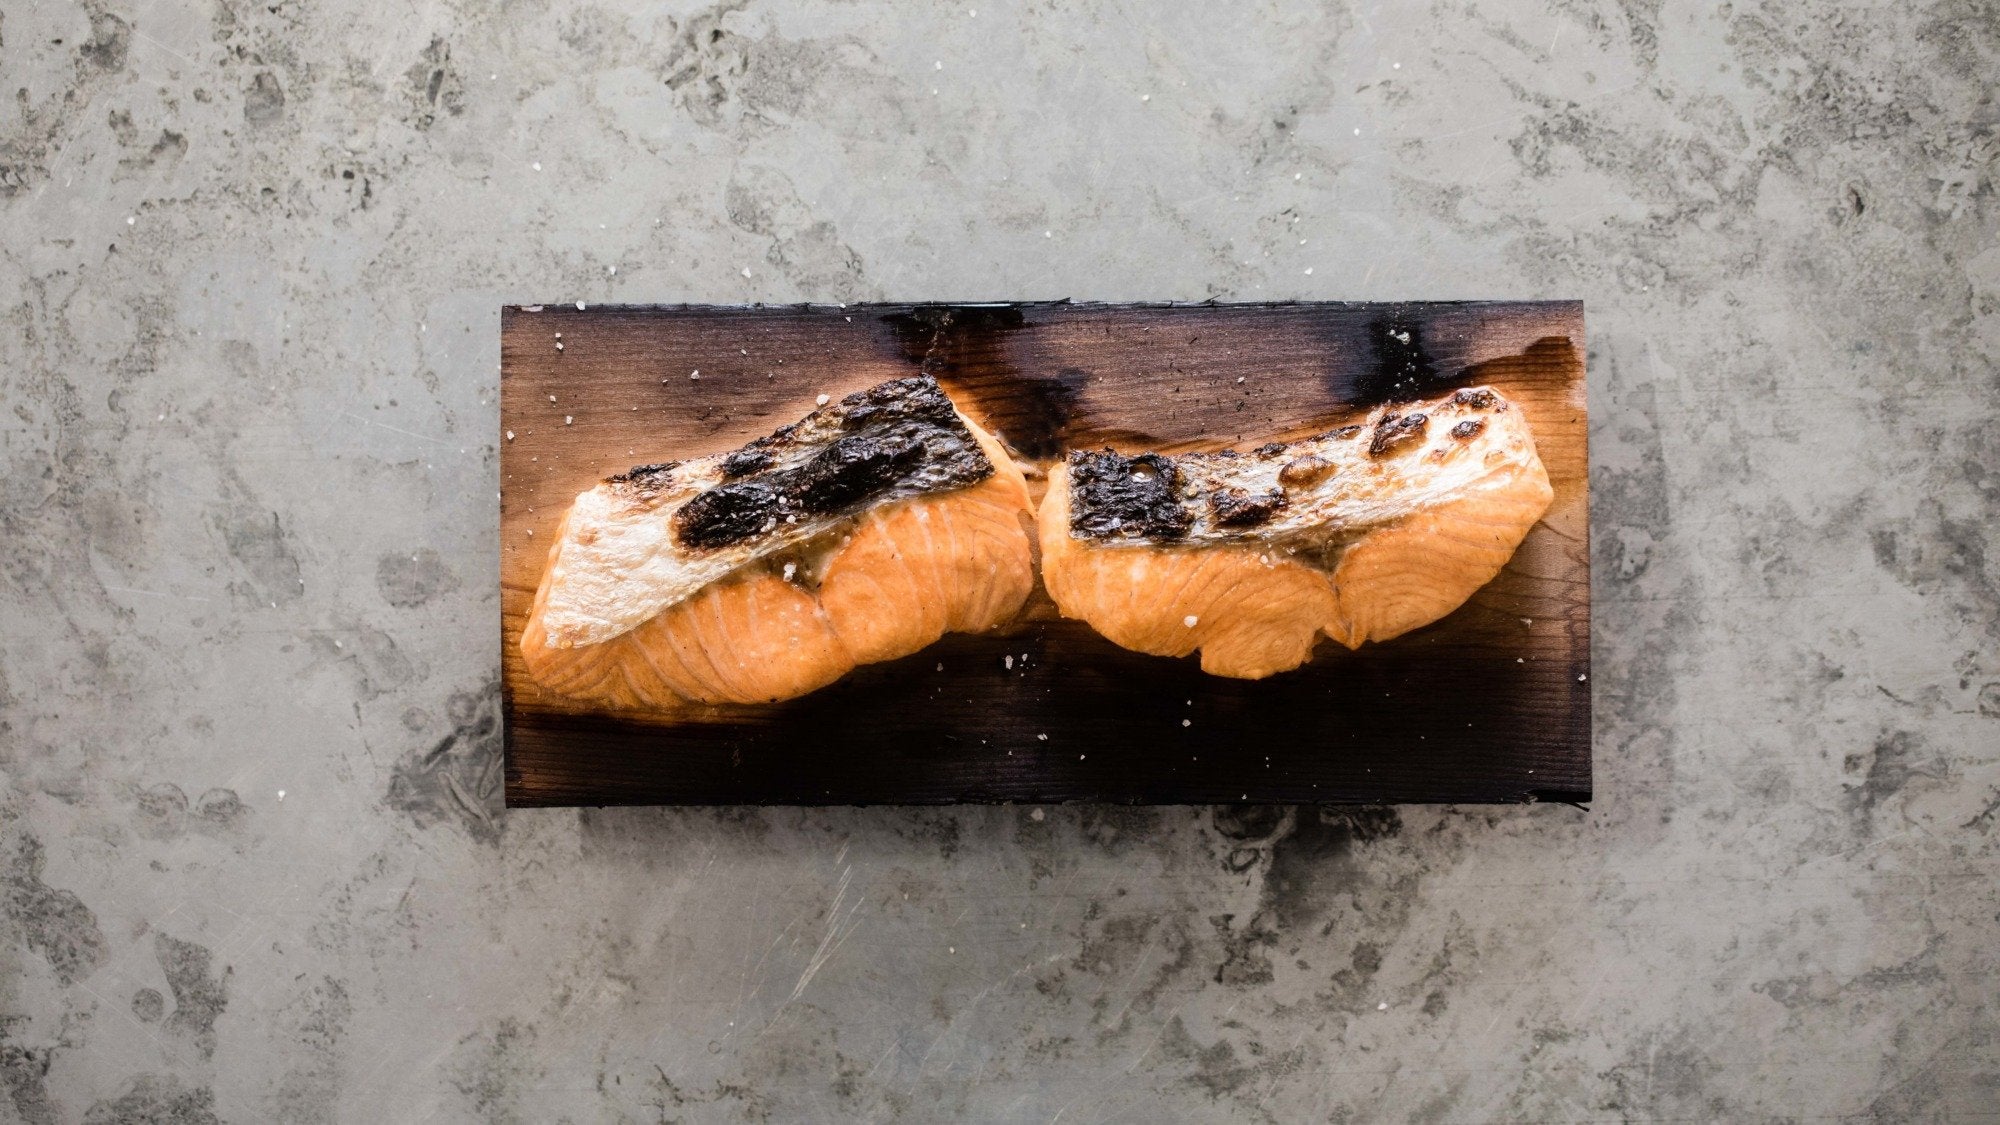 Plank Cooked Salmon Recipe - Gozney